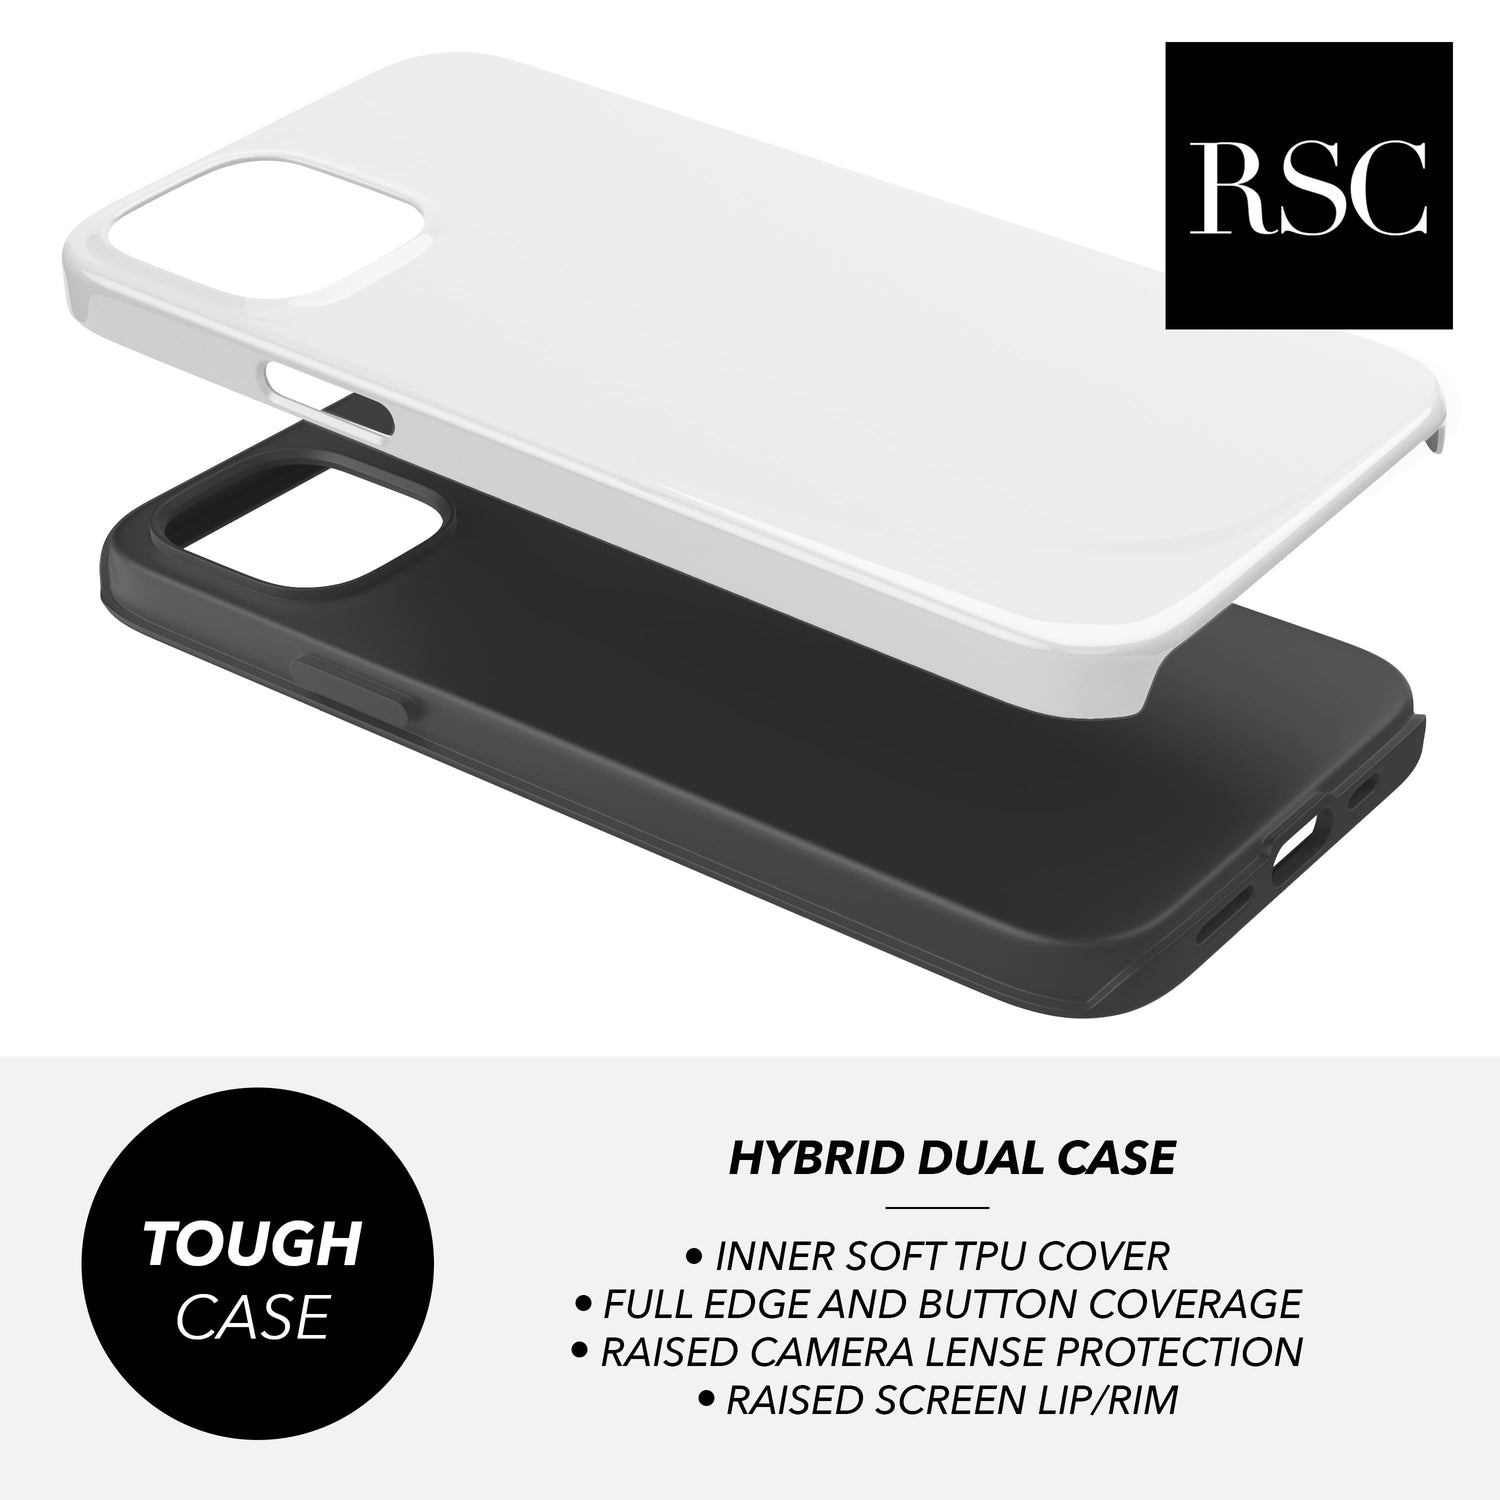 Custom Red Leopard Print Case  Phone Case